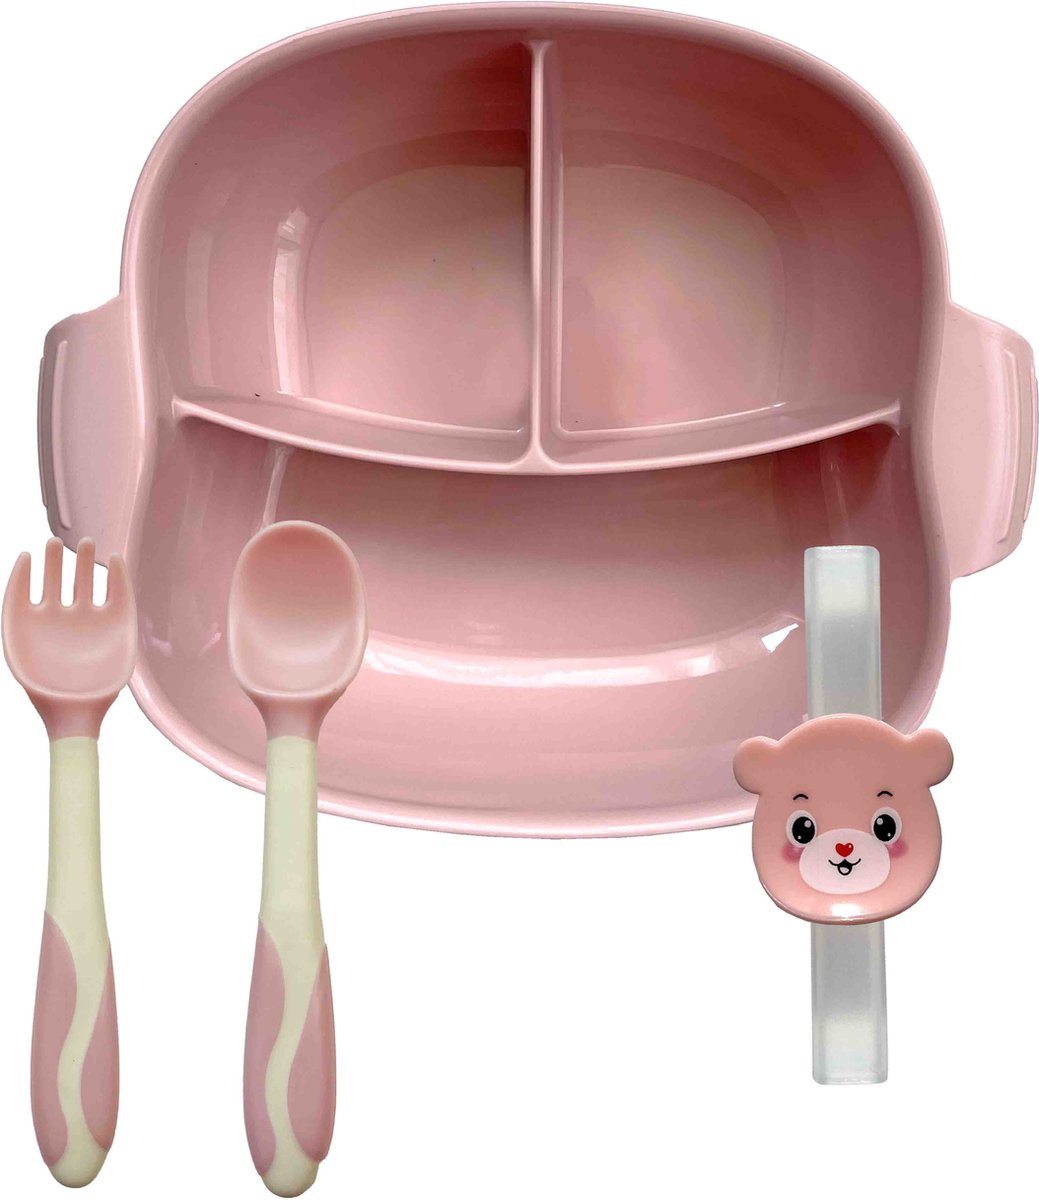 Major Products - 4-delig kinderservies - Baby vakjes bord met zuignap - Onbreekbaar Kinderservies - Roze